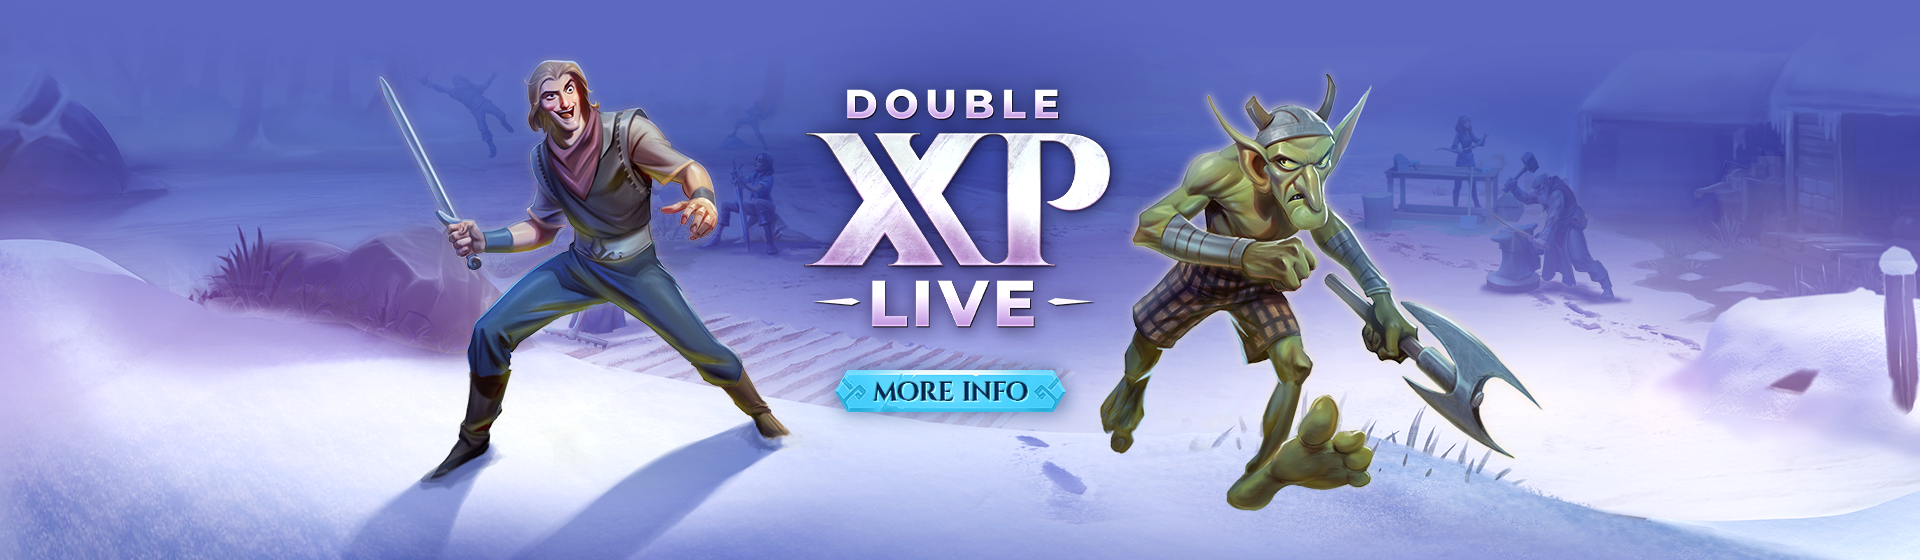 Double XP: Live